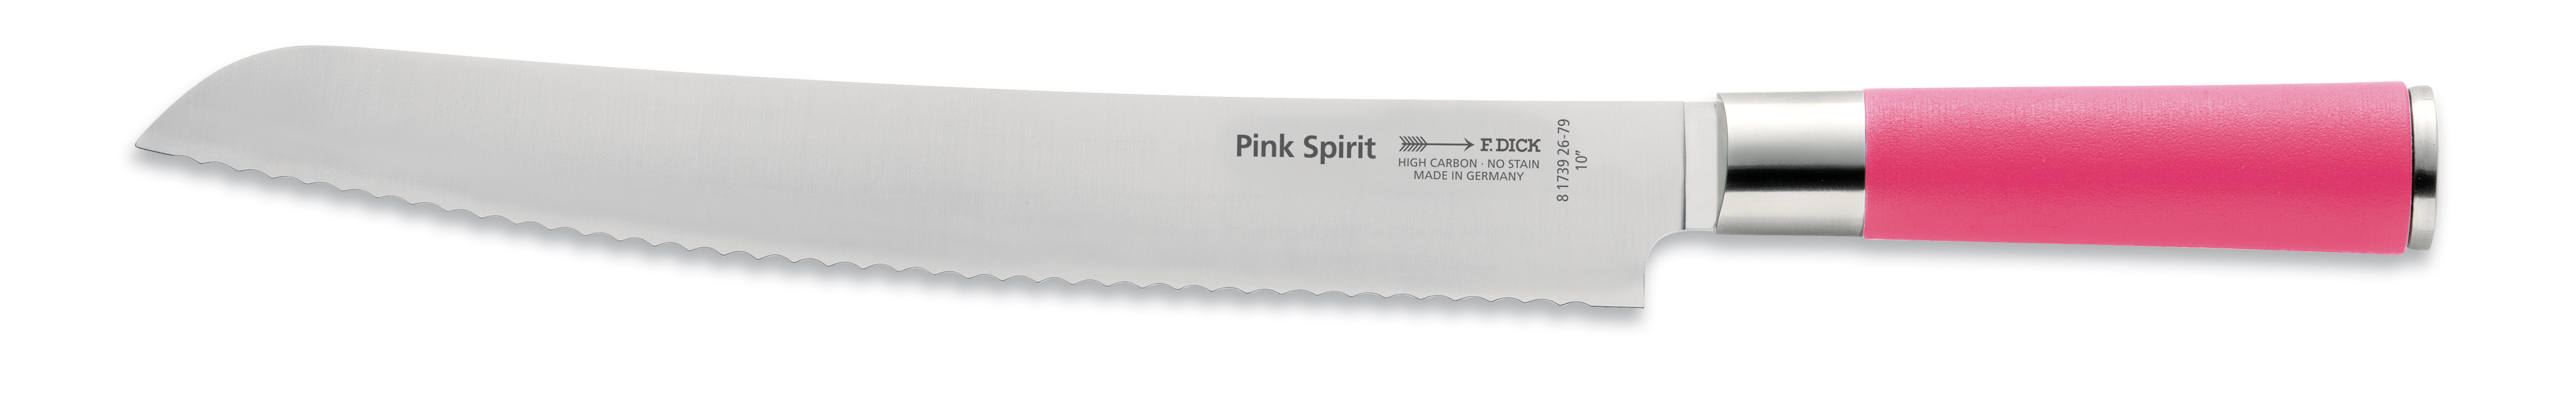 DICK Brotmesser, Wellenschliff, 26 cm, Pink Spirit